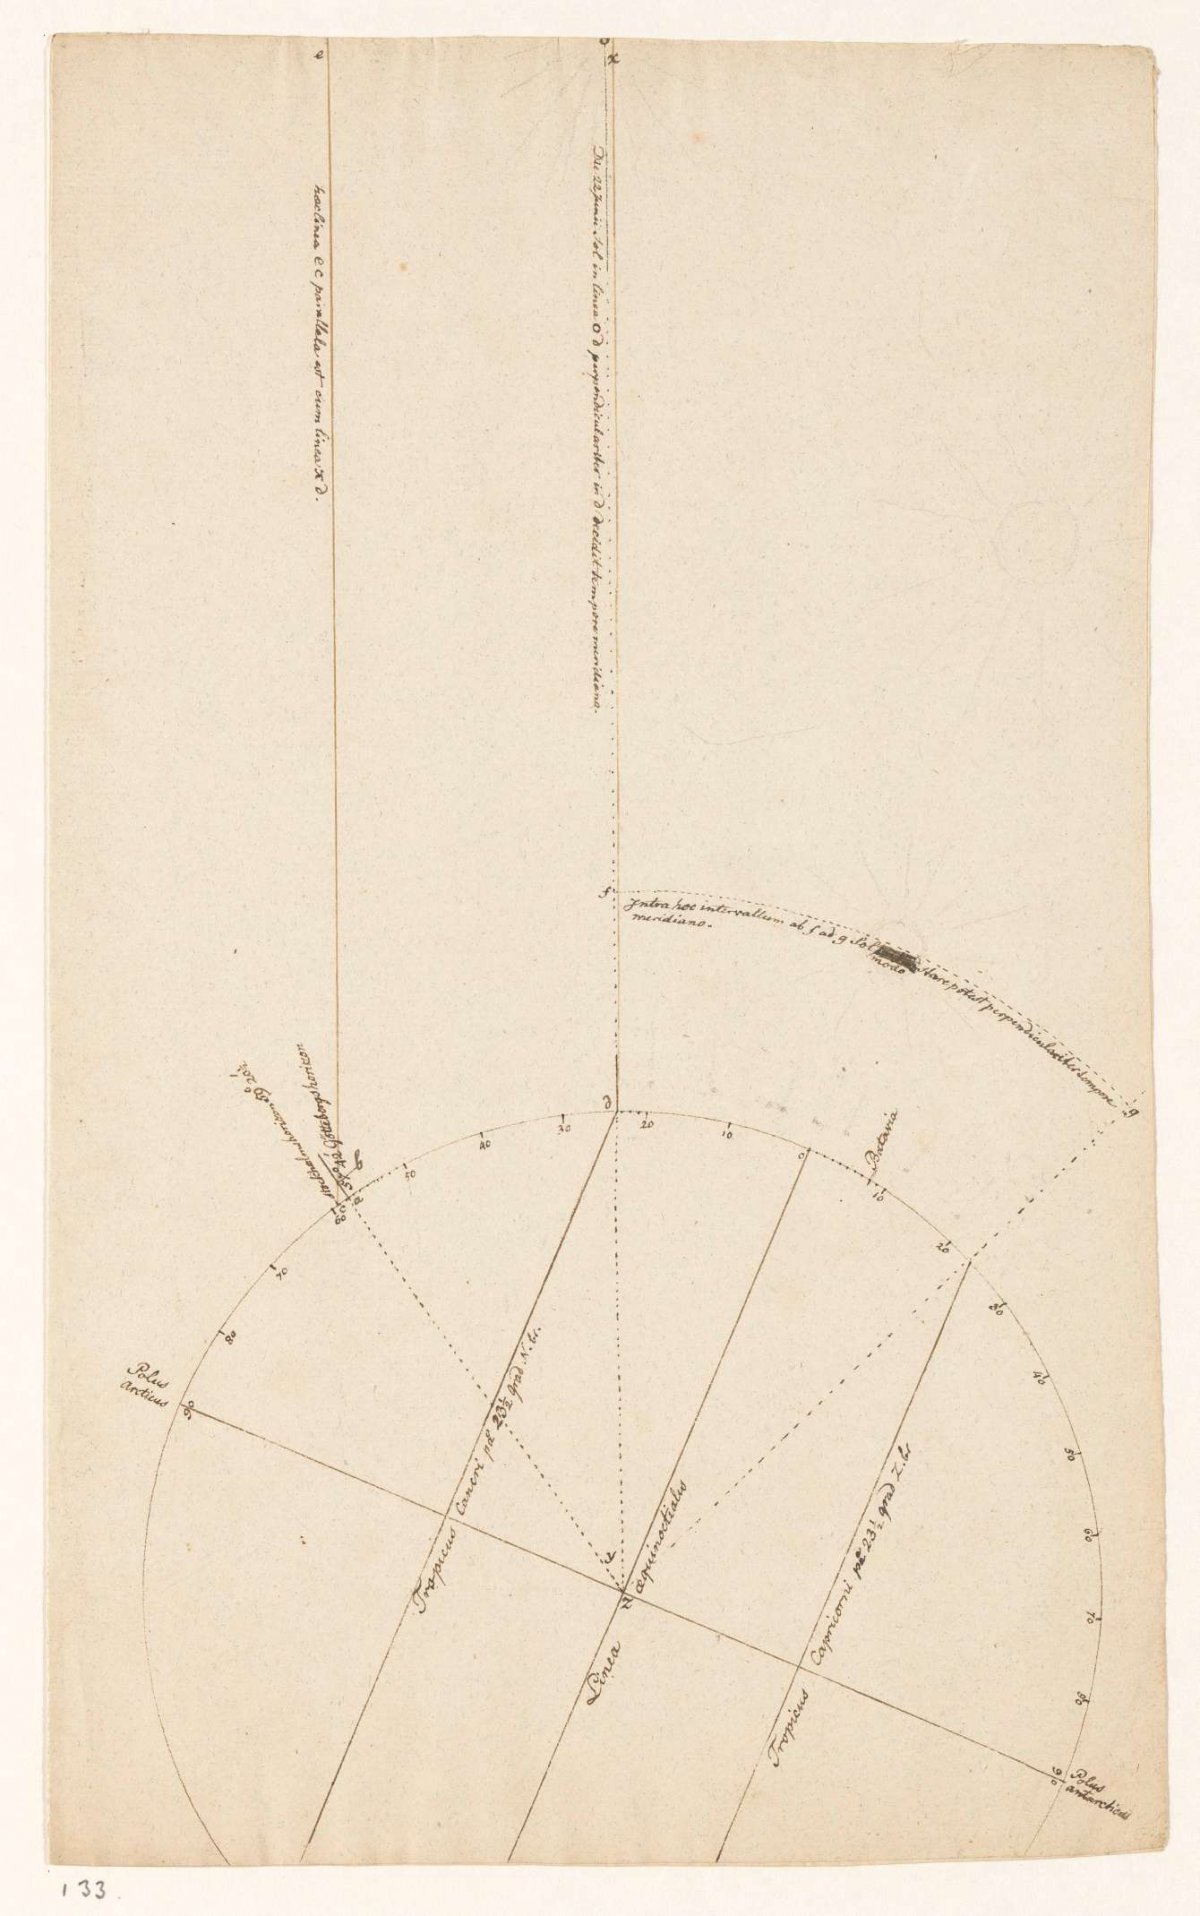 Astronomische studie, Jan Brandes, 1792